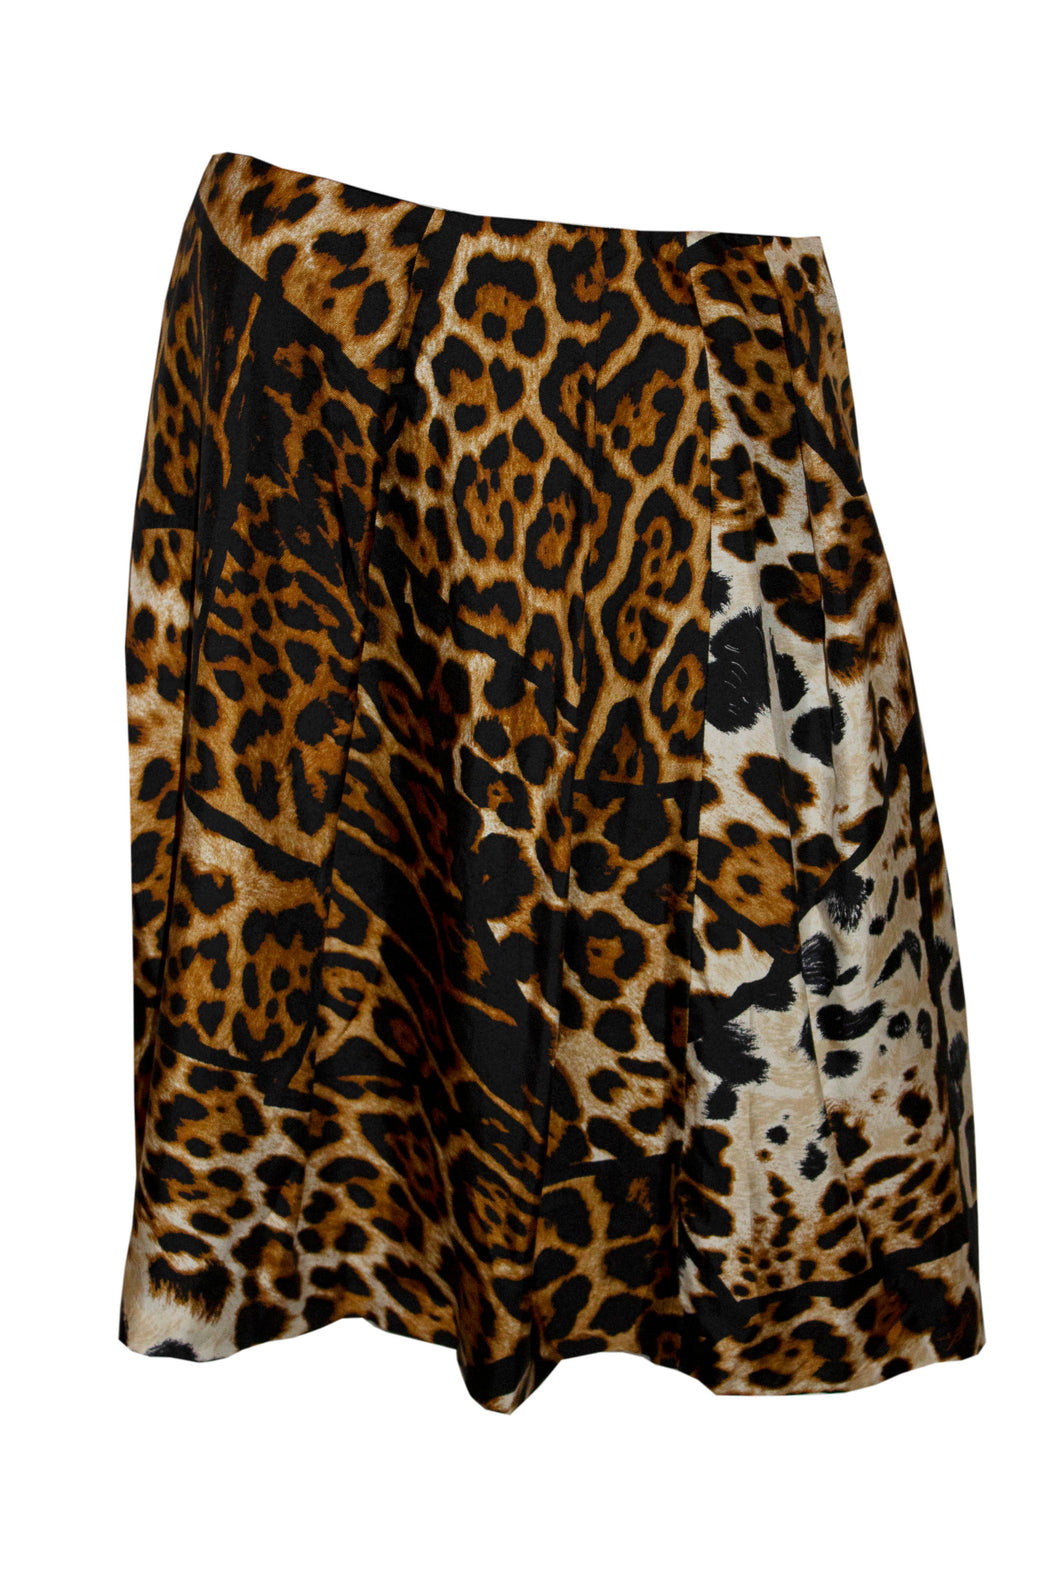 Yves Saint Laurent Animal Print Silk Skirt